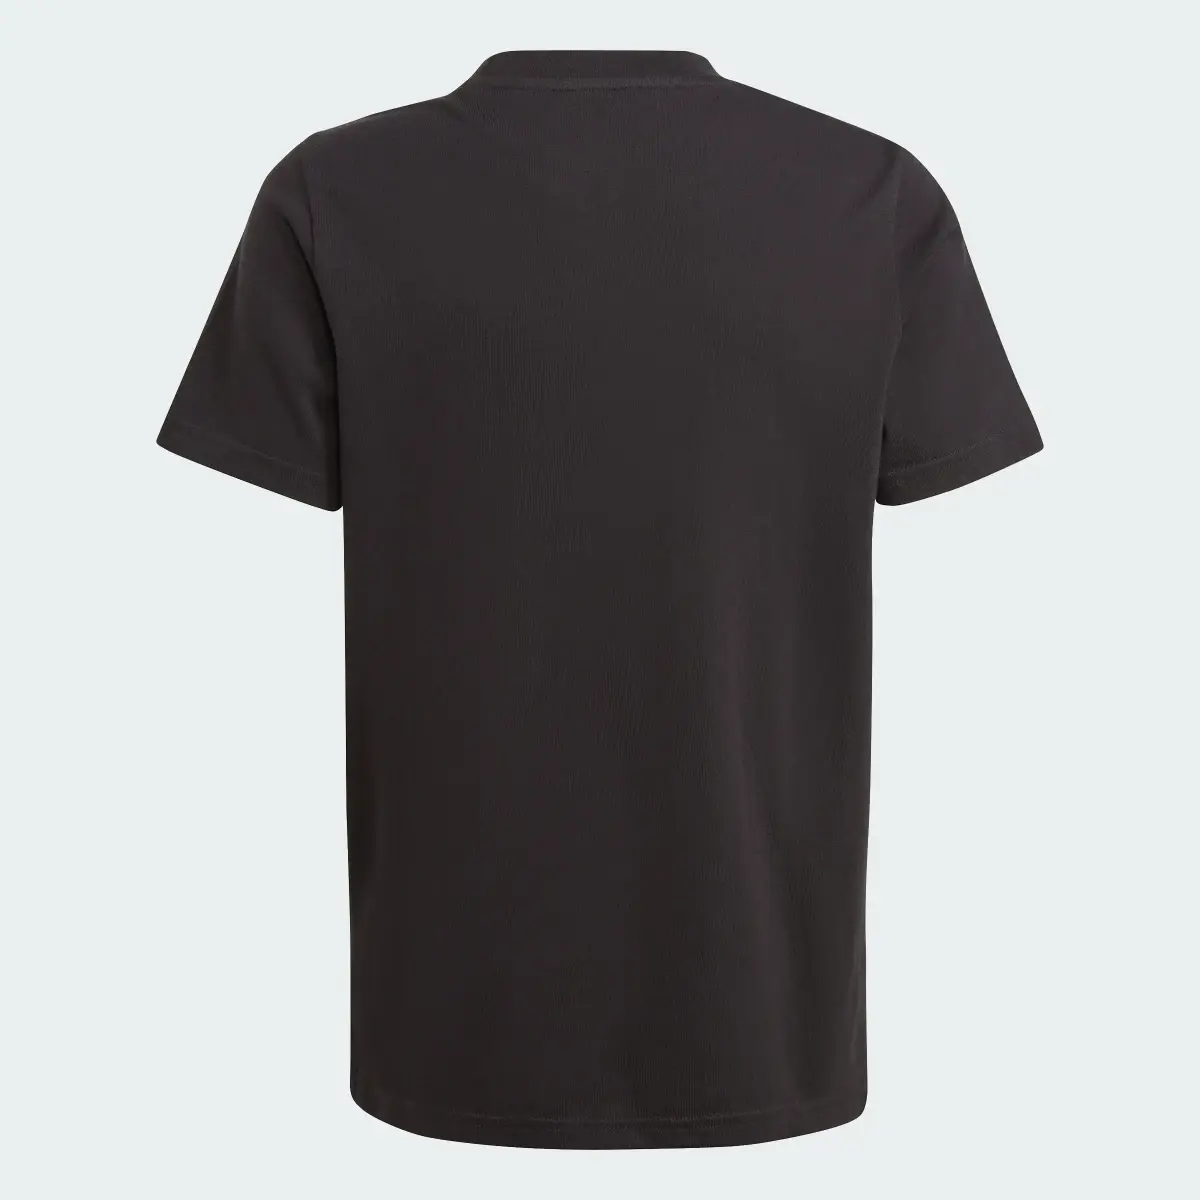 Adidas All Blacks Graphic T-Shirt. 2